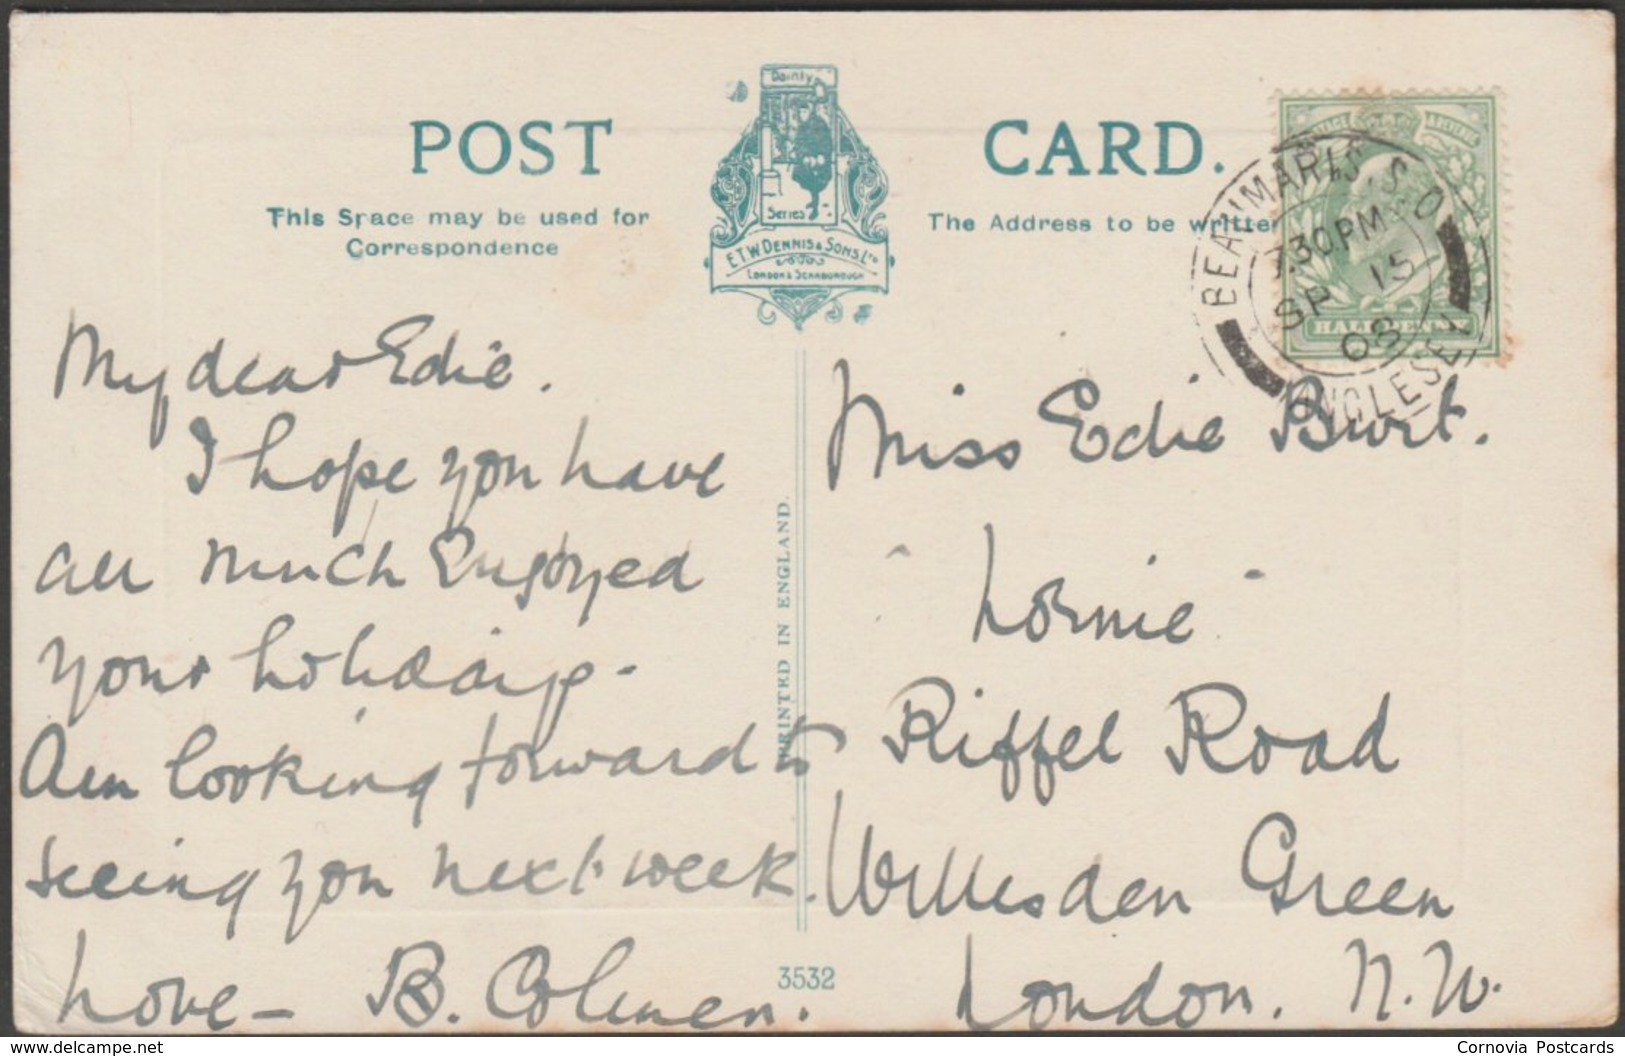 Conway Castle, Caernarvonshire, 1908 - Dennis Postcard - Caernarvonshire